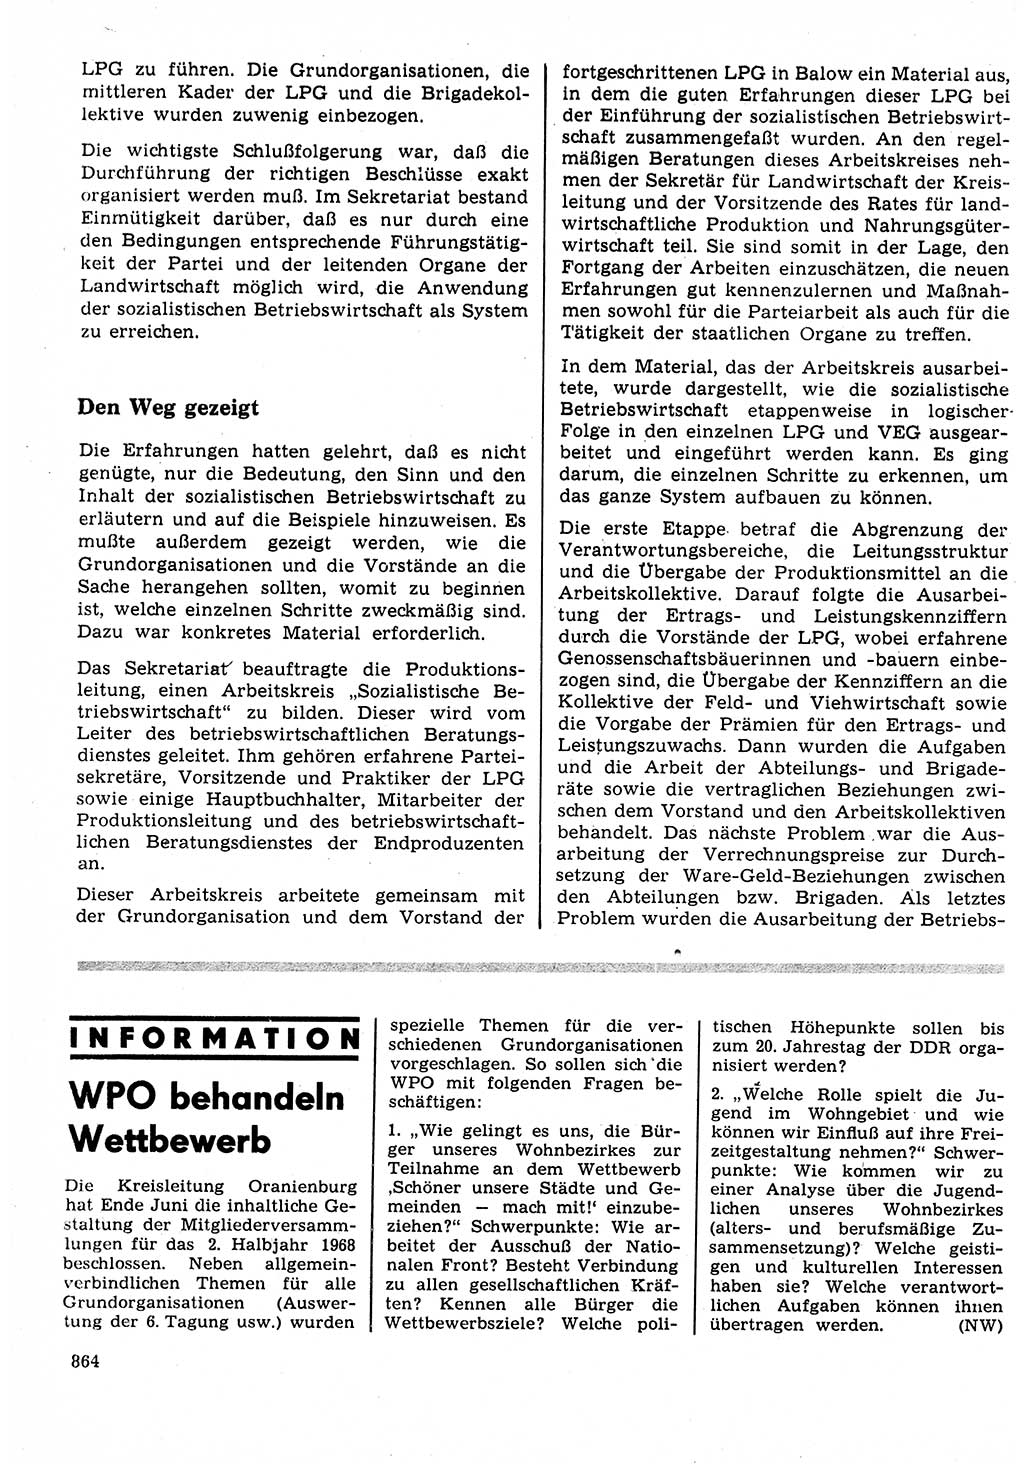 Neuer Weg (NW), Organ des Zentralkomitees (ZK) der SED (Sozialistische Einheitspartei Deutschlands) für Fragen des Parteilebens, 23. Jahrgang [Deutsche Demokratische Republik (DDR)] 1968, Seite 848 (NW ZK SED DDR 1968, S. 848)